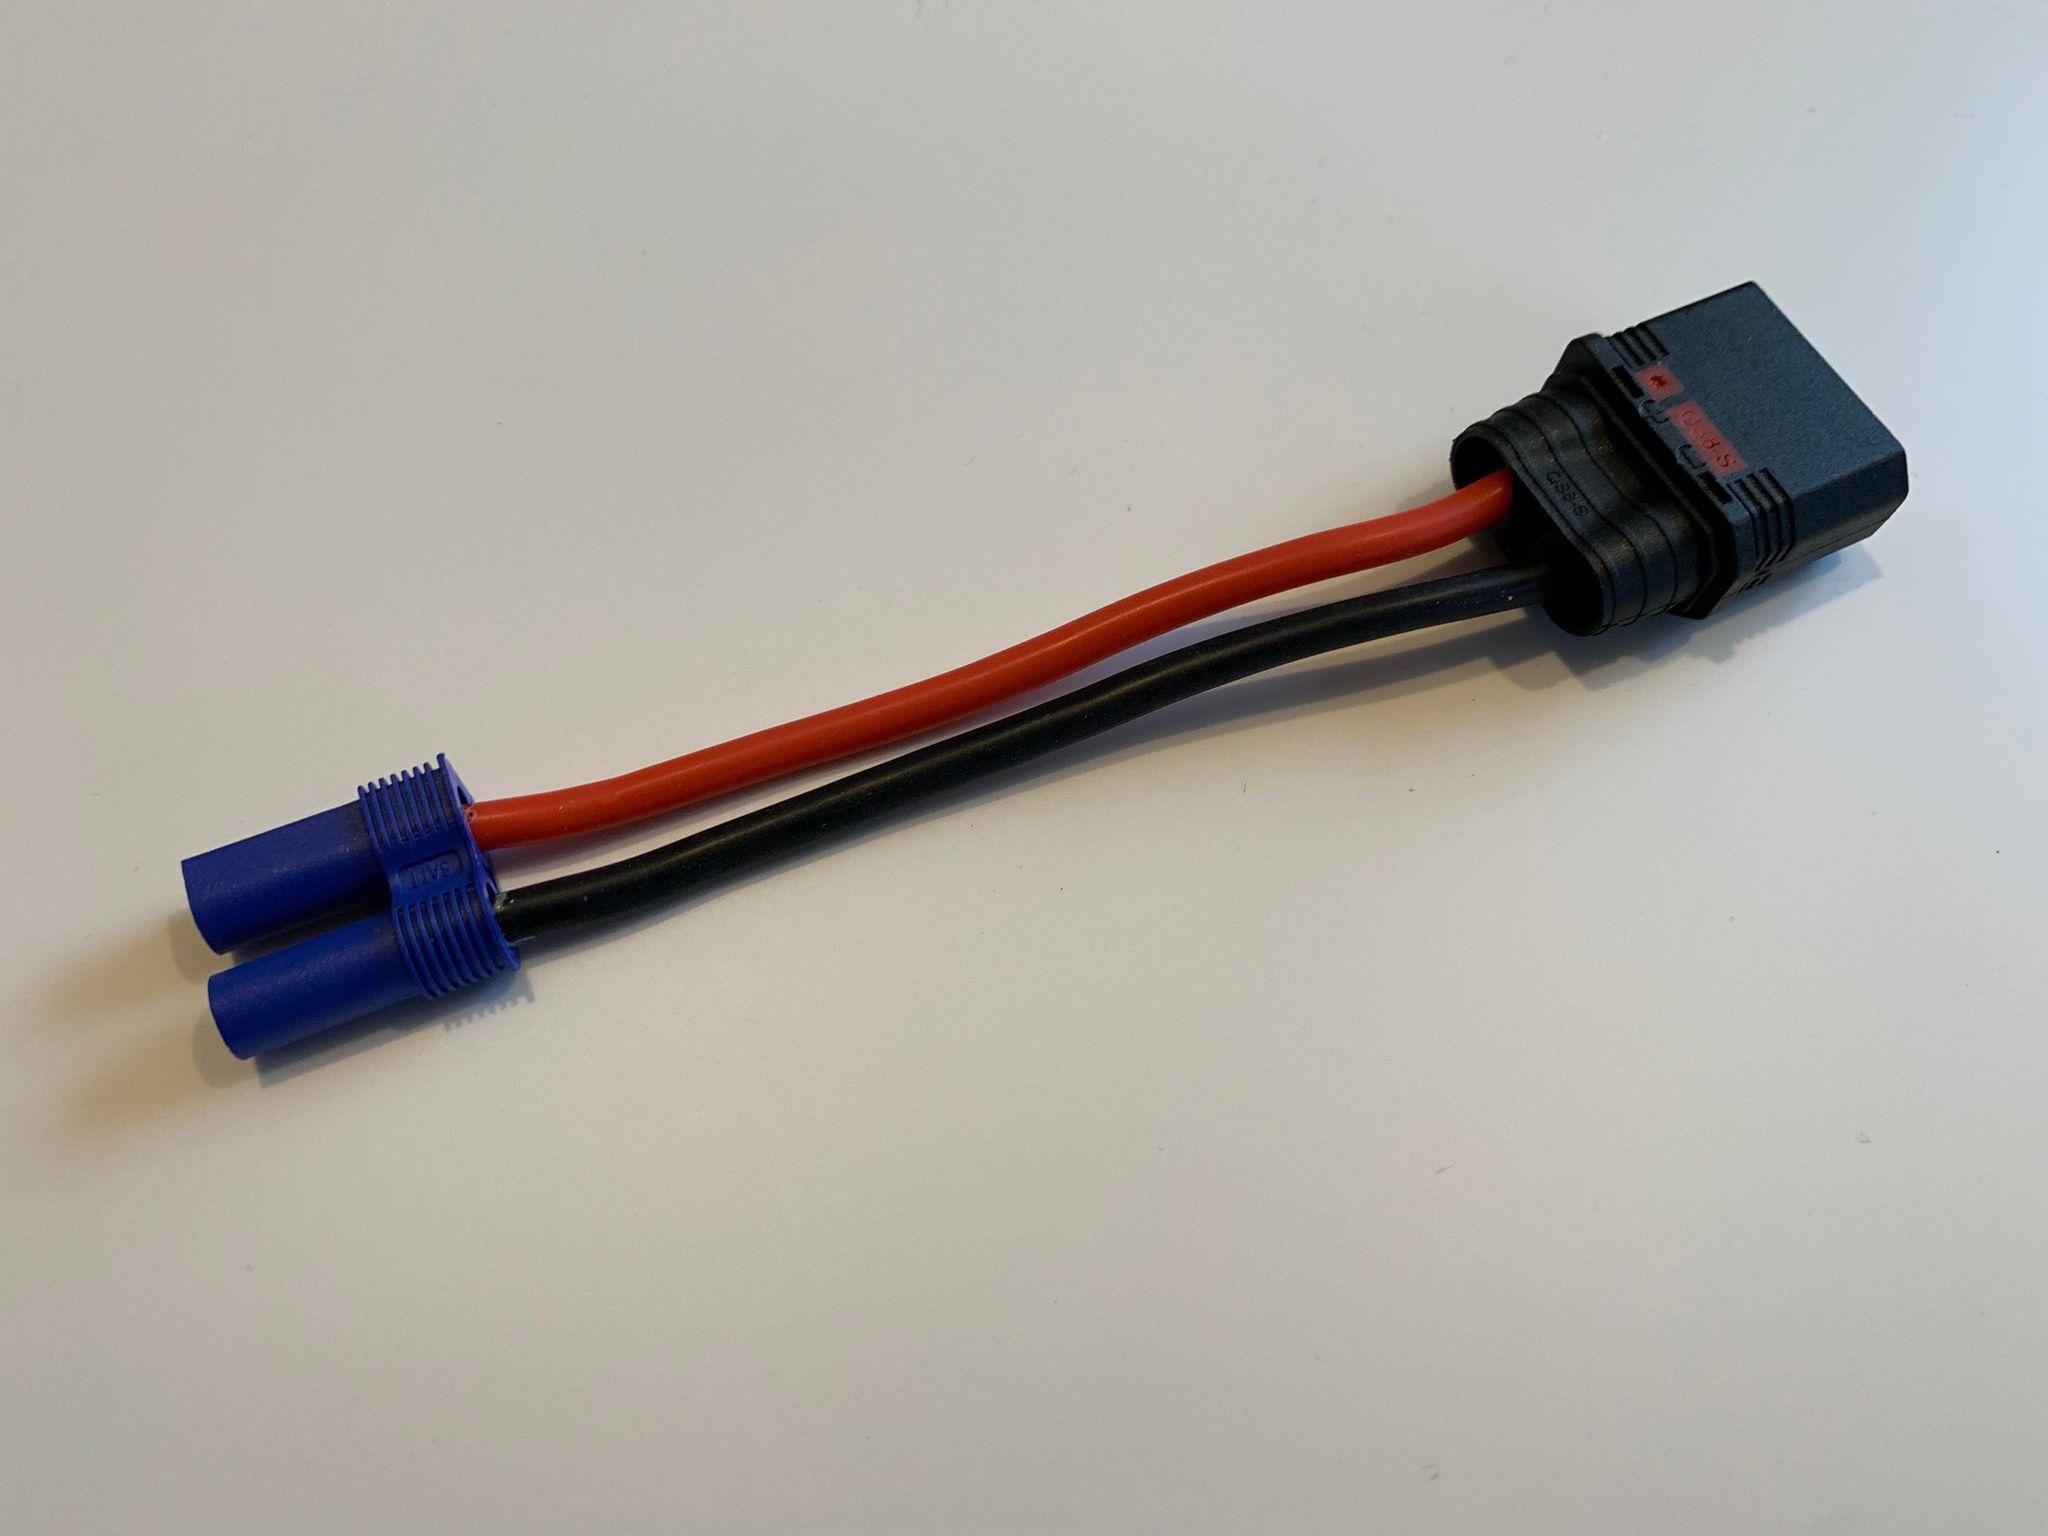 QS8 Anti Spark Verloopkabel naar EC5 12AWG Siliconen kabel